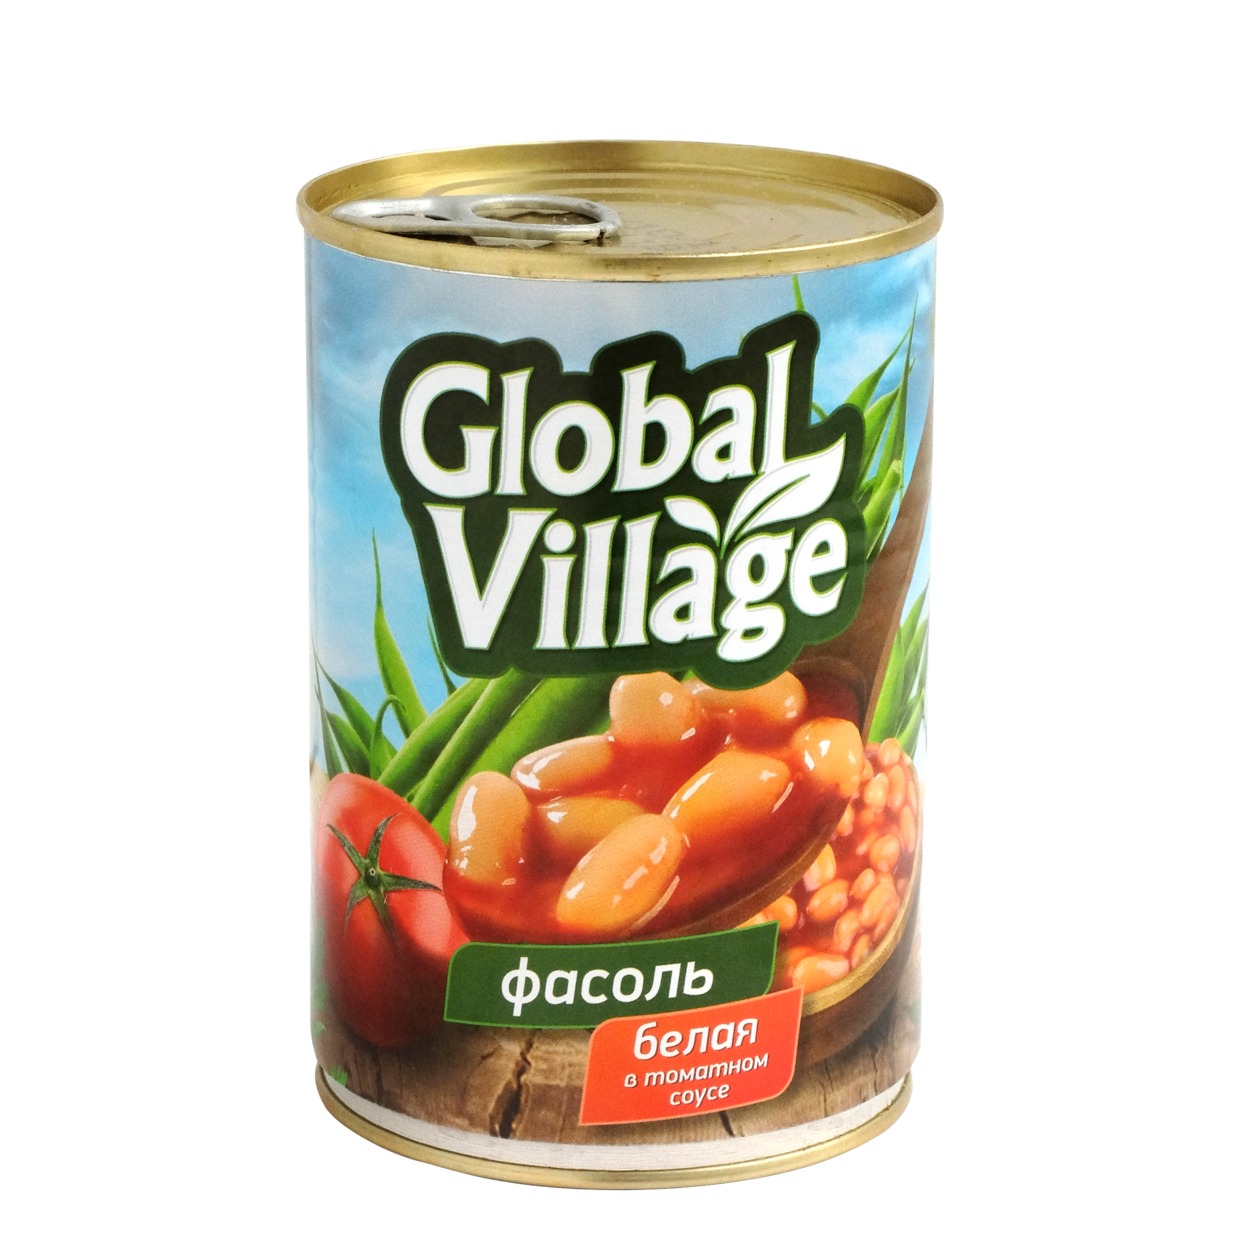 Фасоль Global Village, белая, в томатном соку, 425 мл по акции в Пятерочке